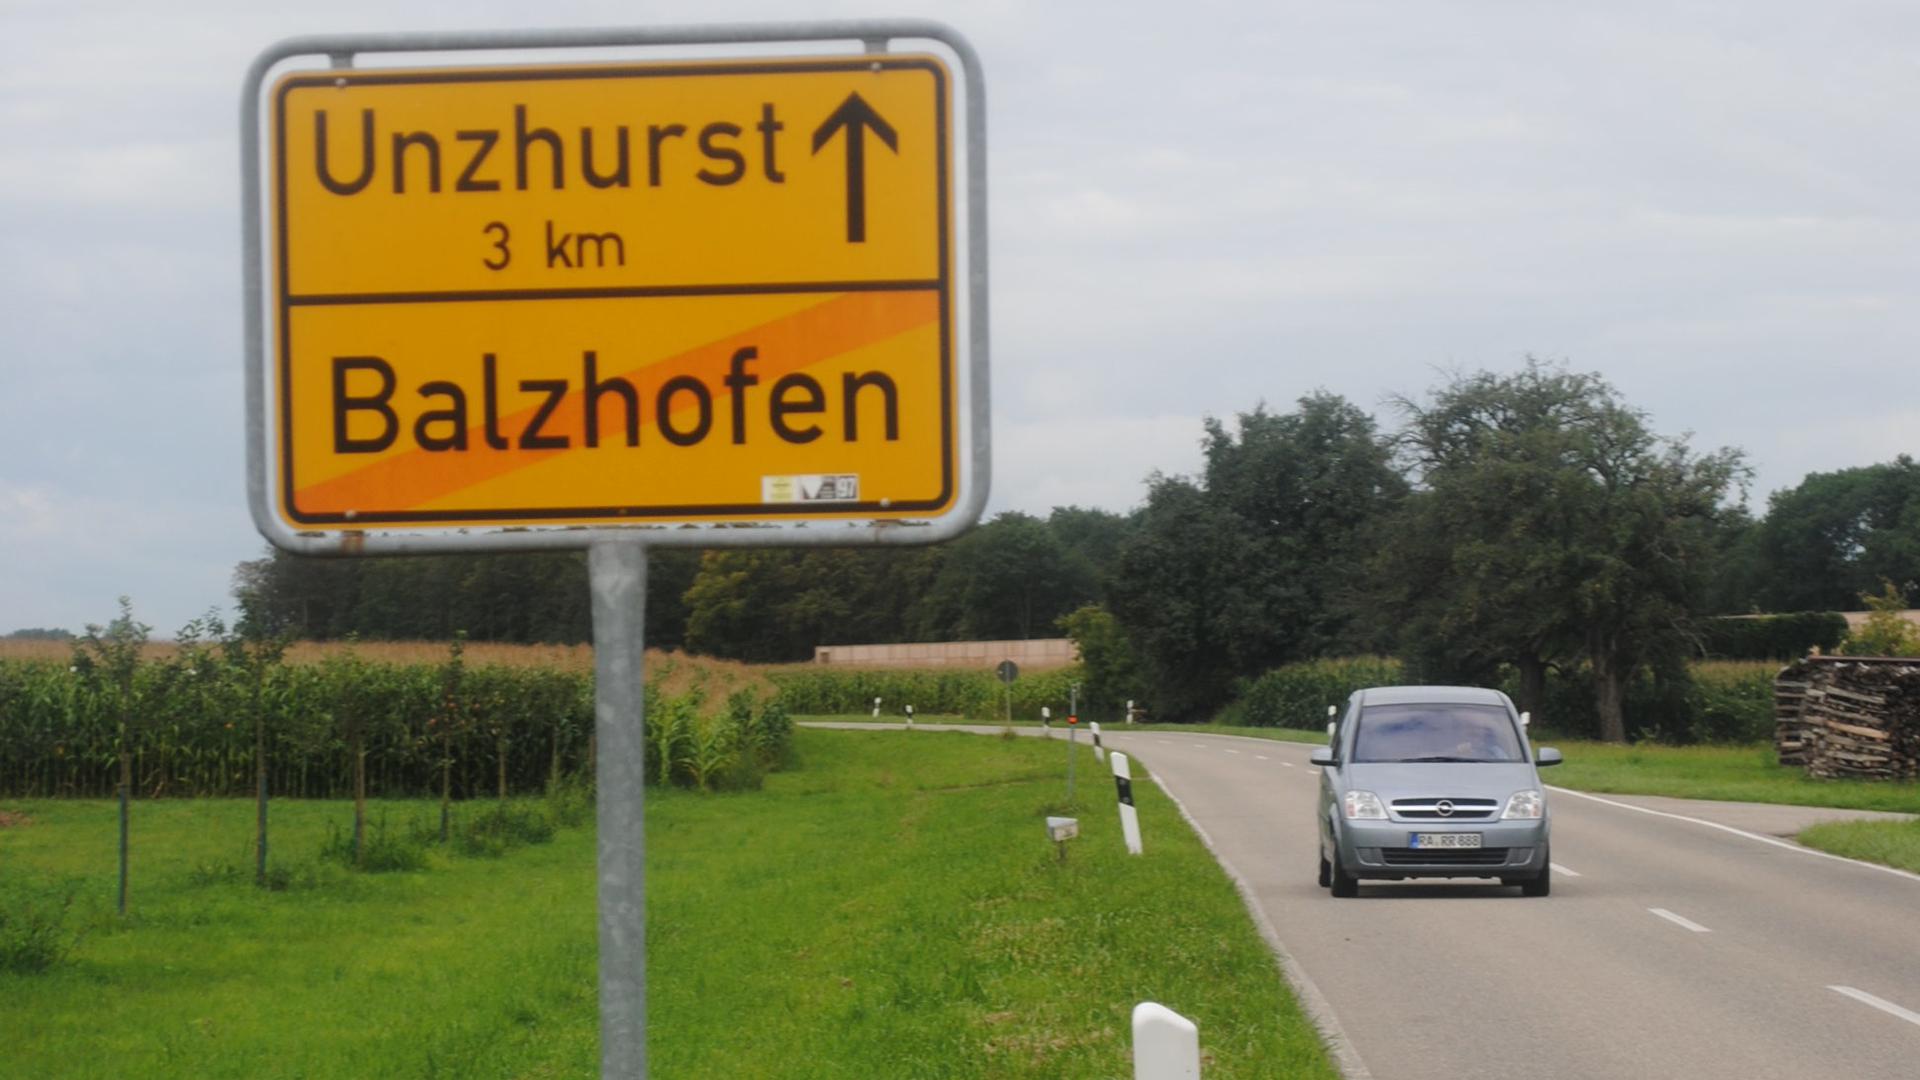 Balzhofen bildet die südliche Grenze der heute bekannten PFC-Belastung. Ein weiterer belasteter Stadtteil ist Weitenung.